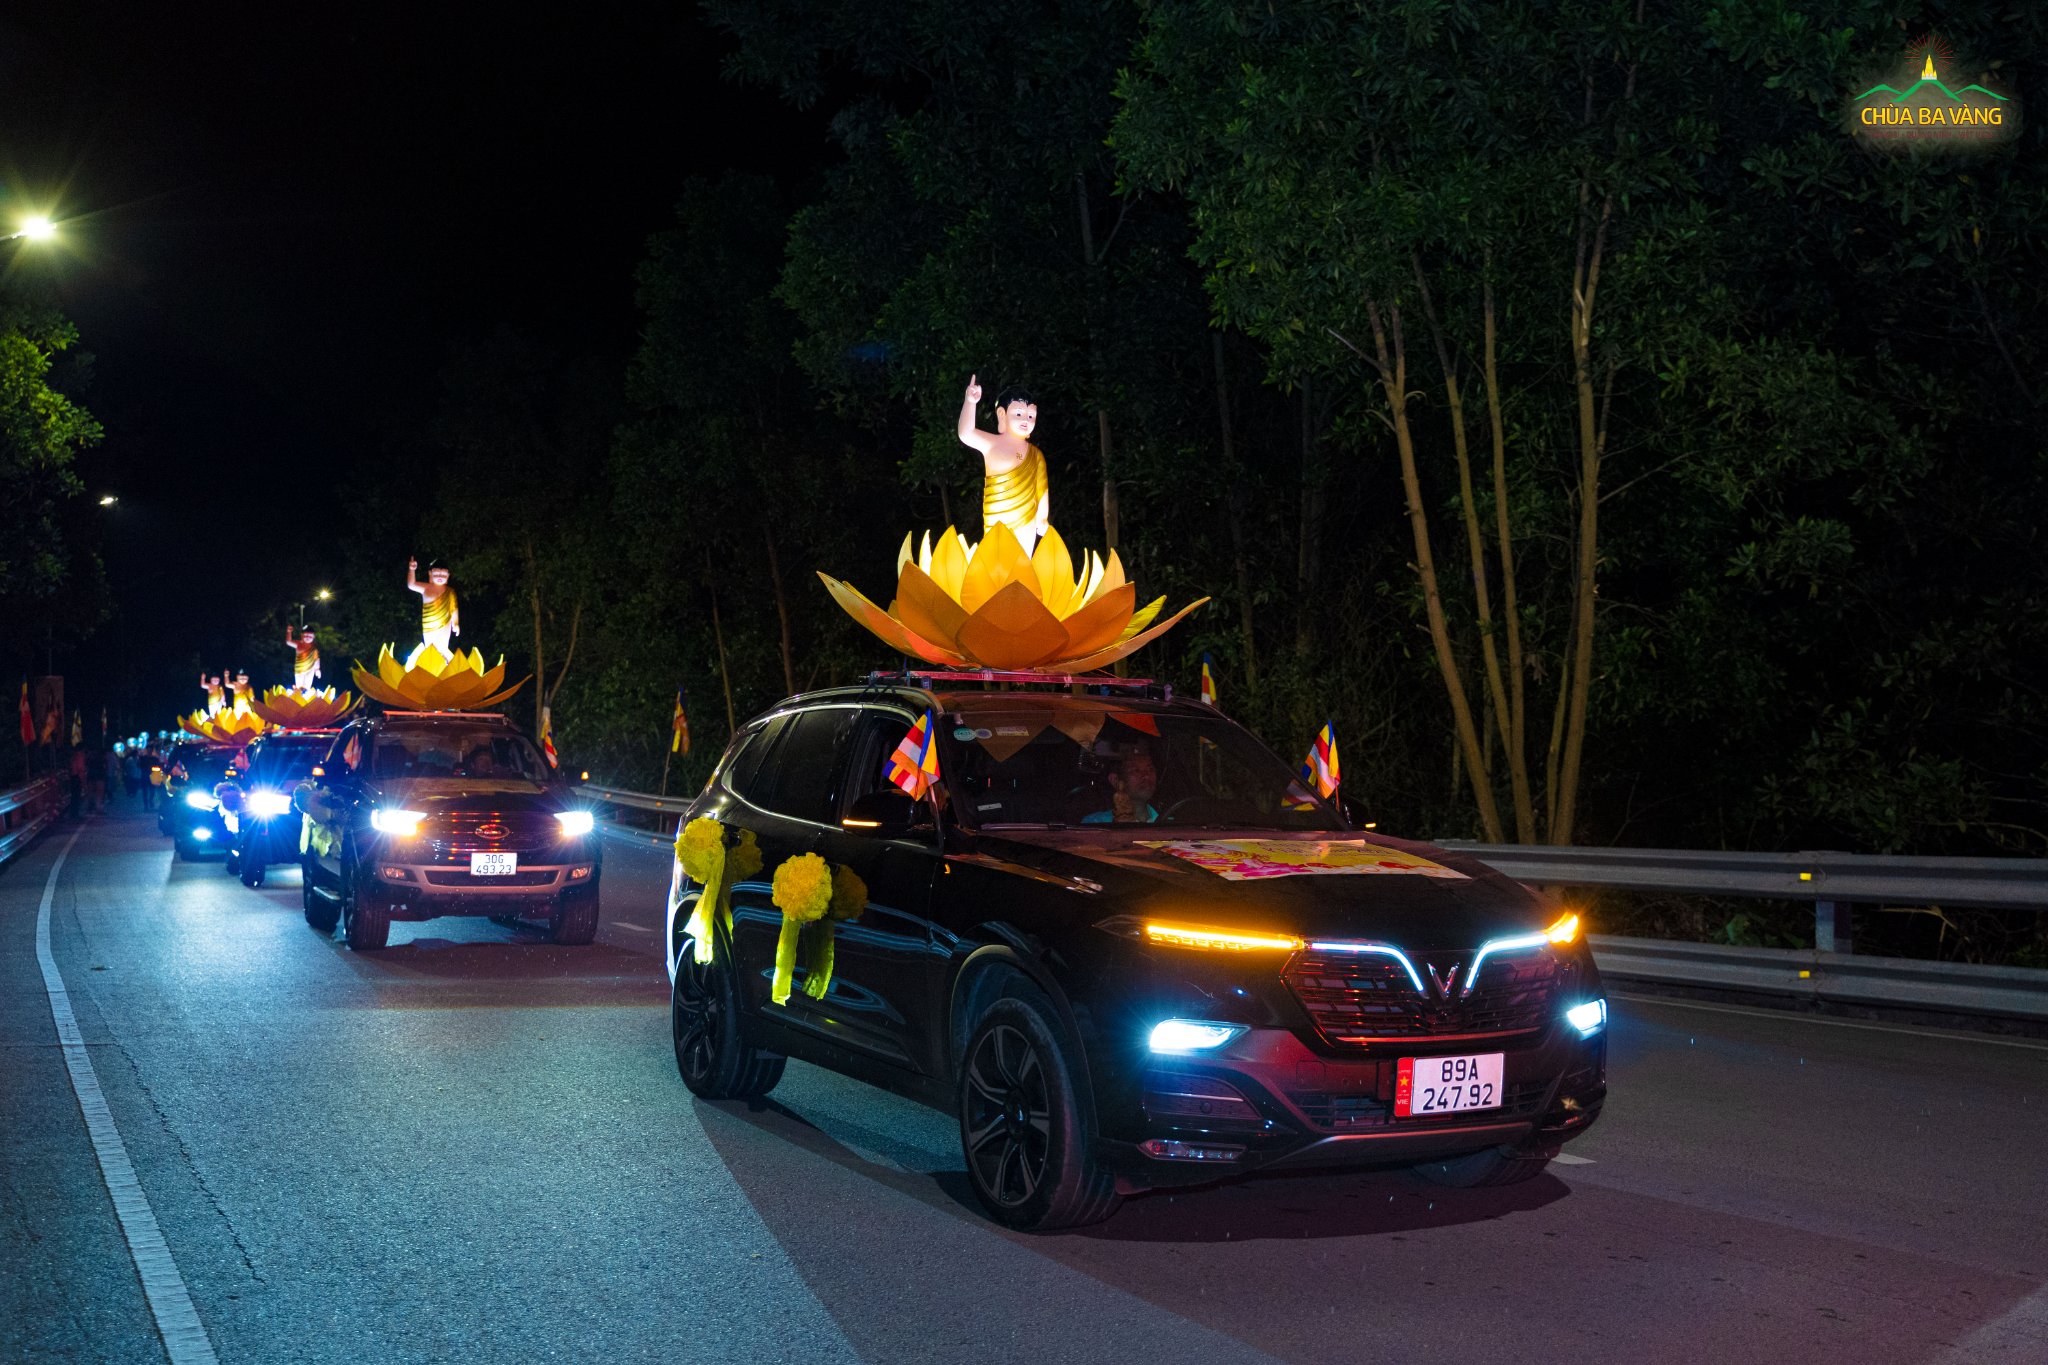 Trong đêm tháng 4 linh thiêng, huyền ảo, hàng chục chiếc xe do các gia đình Phật tử phát tâm cúng dường cho mượn xe được thiết trí tôn tượng kim thân Đức Phật sơ sinh nhiễu hành qua các cung đường trong khuôn viên chùa Ba Vàng